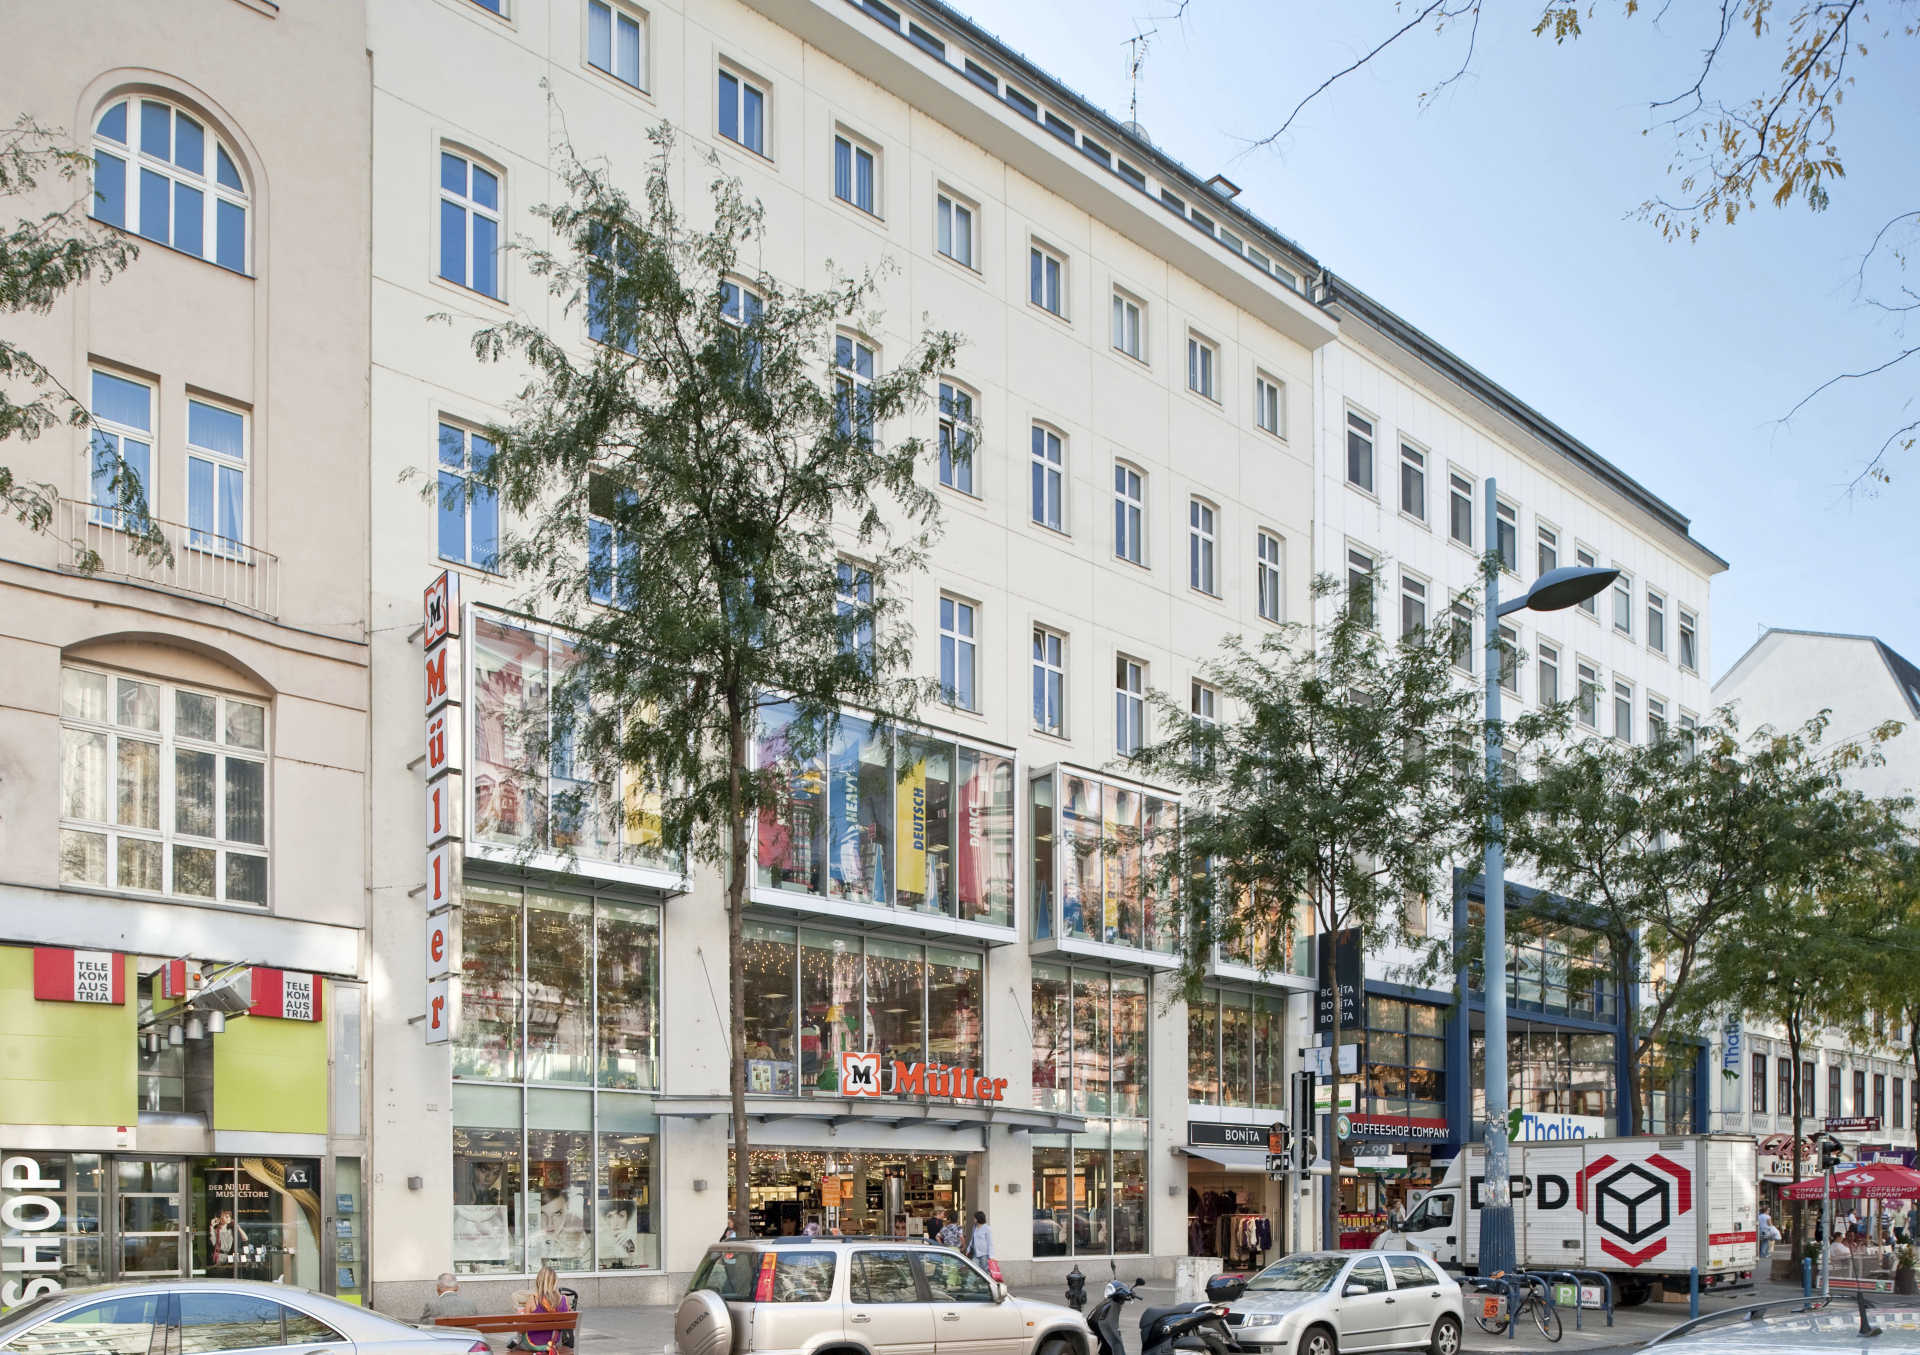 VANS Store Vienna - Schottenfeld - Mariahilferstrasse 106